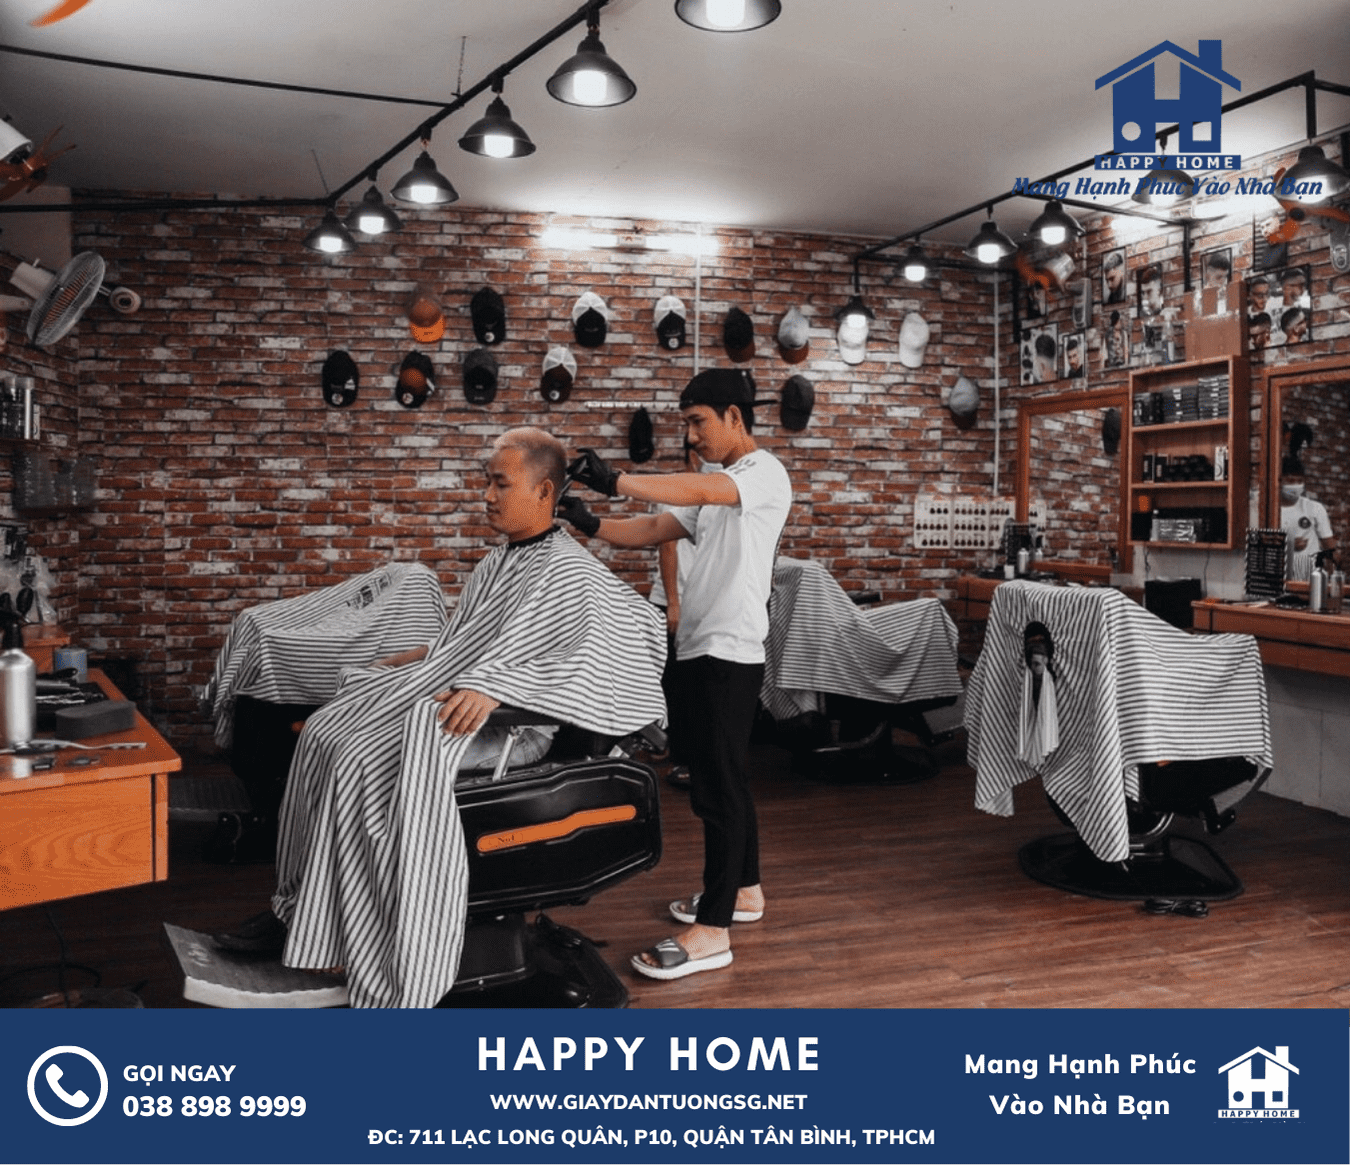 Hình ảnh salon tóc của khách hàng được trang trí giấy dán tường giả gạch đẹp và thu hút nhiều khách hàng